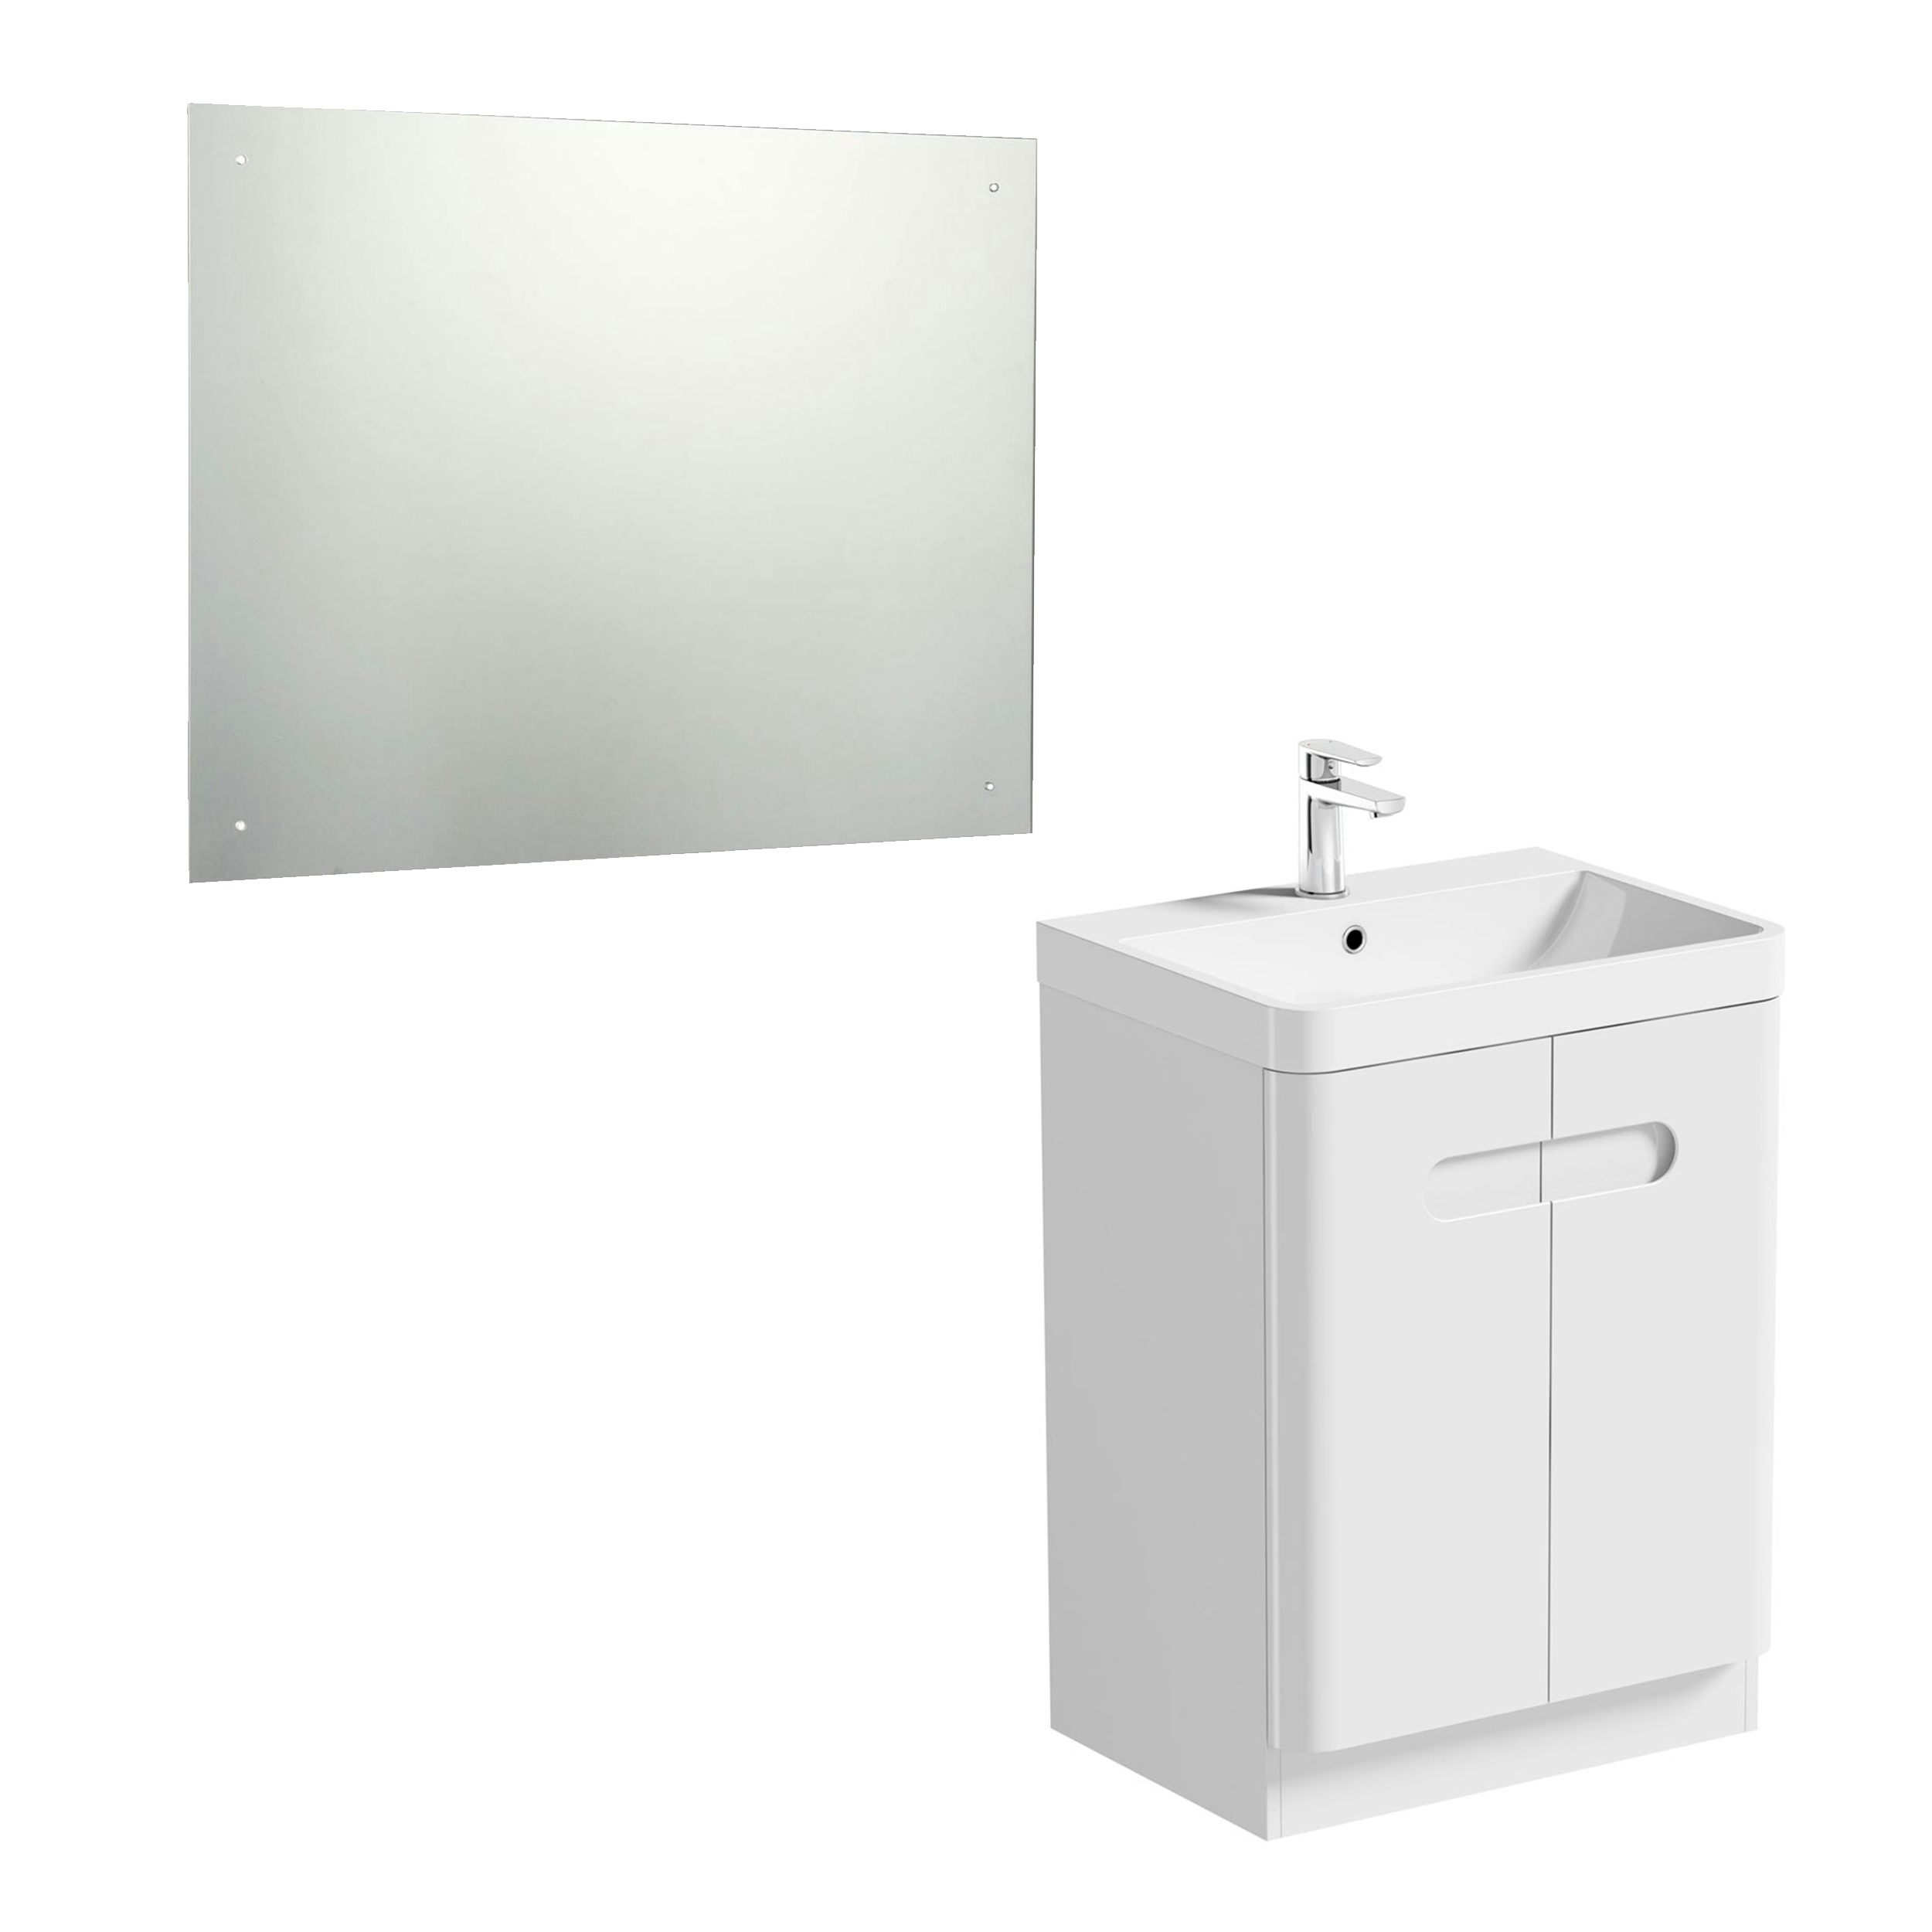 Mode Ellis white floorstanding vanity door unit and basin 600mm with mirror offer